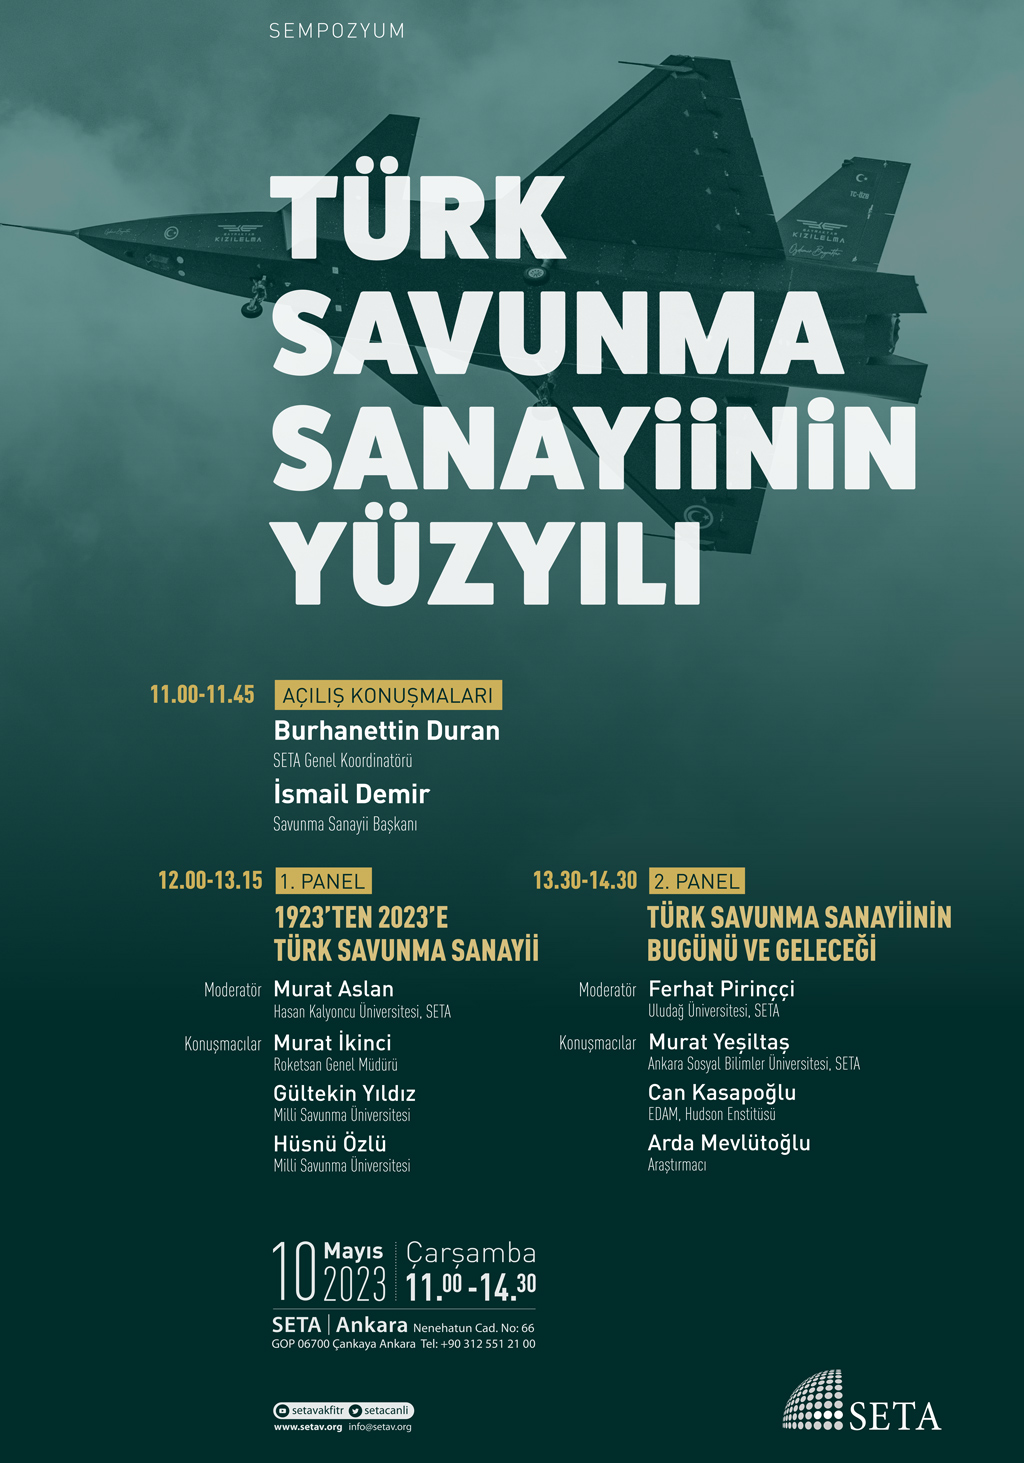 Sempozyum: Türk Savunma Sanayiinin Yüzyılı